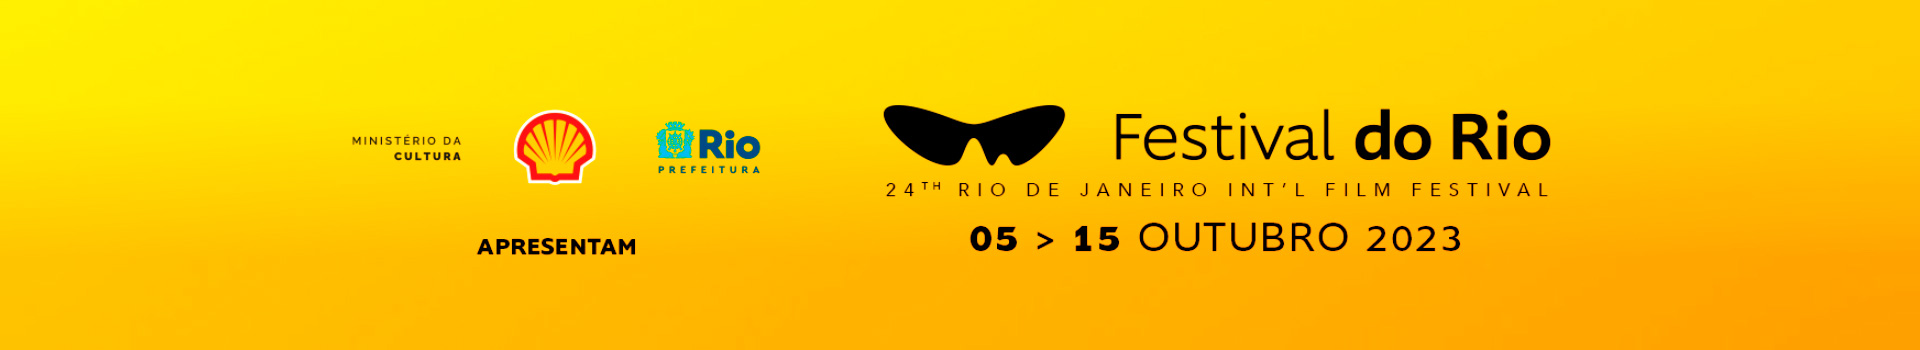 Imagem de logo do cinema Festival do Rio